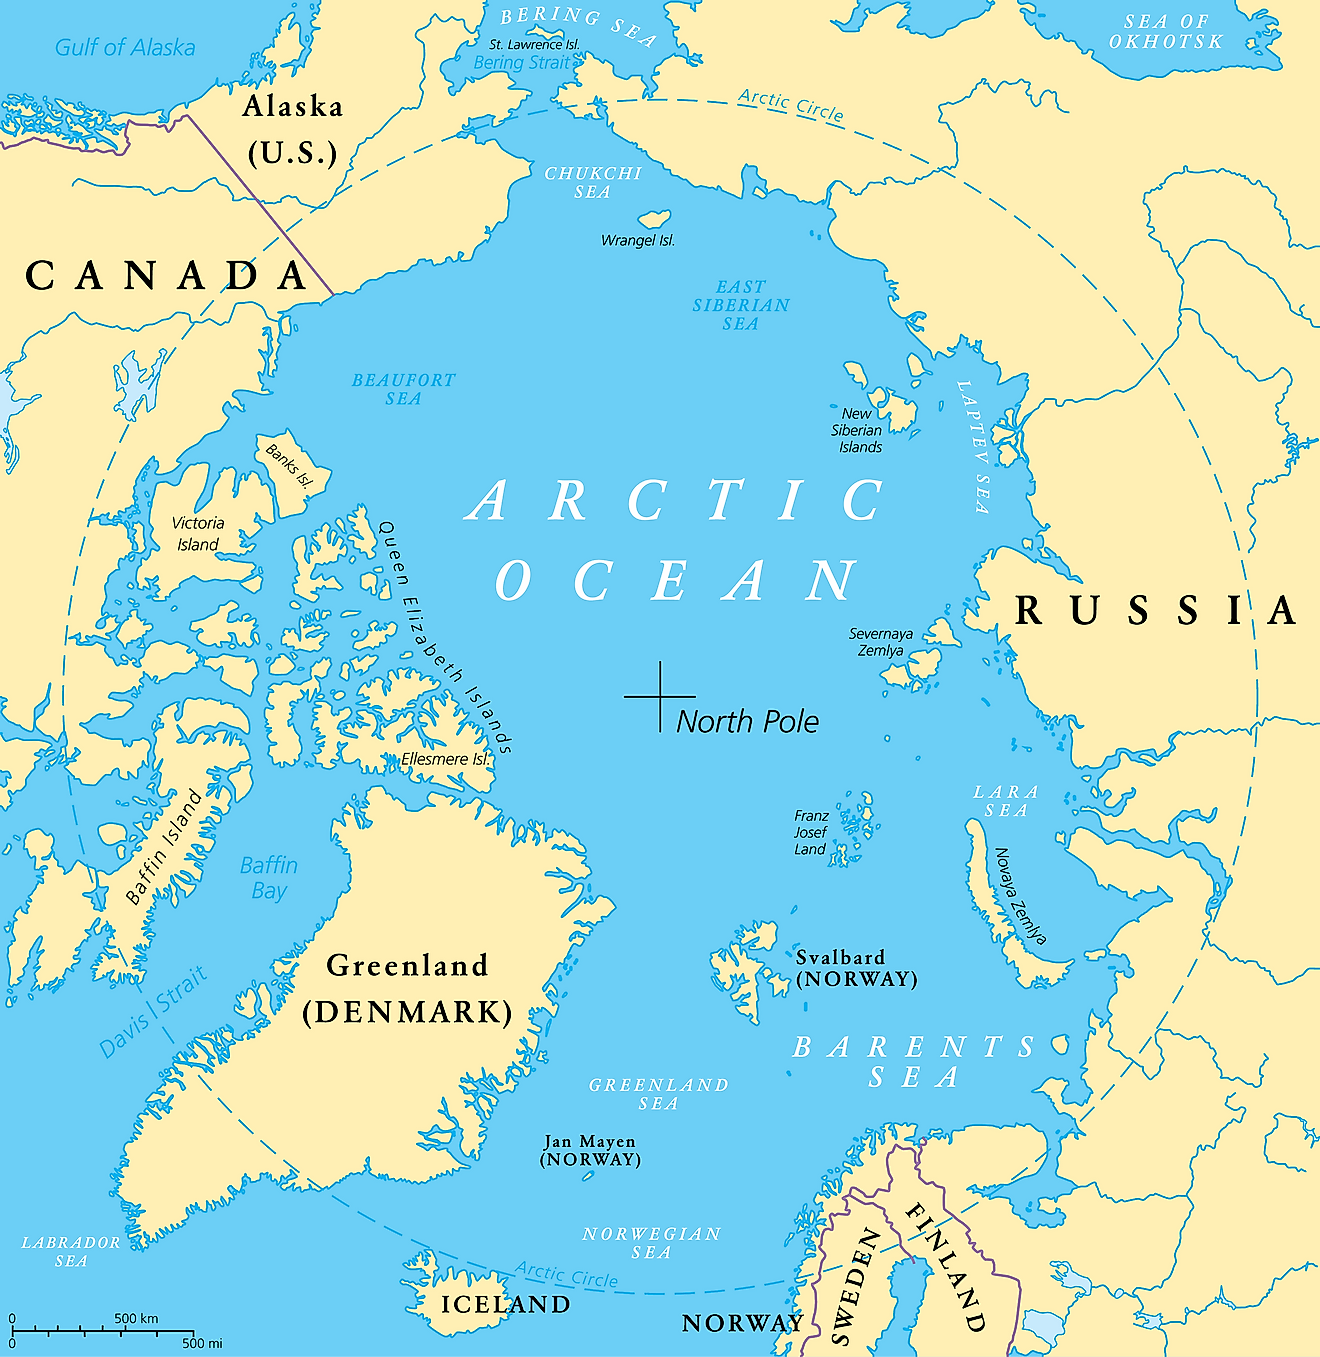 Arctic Circle USA